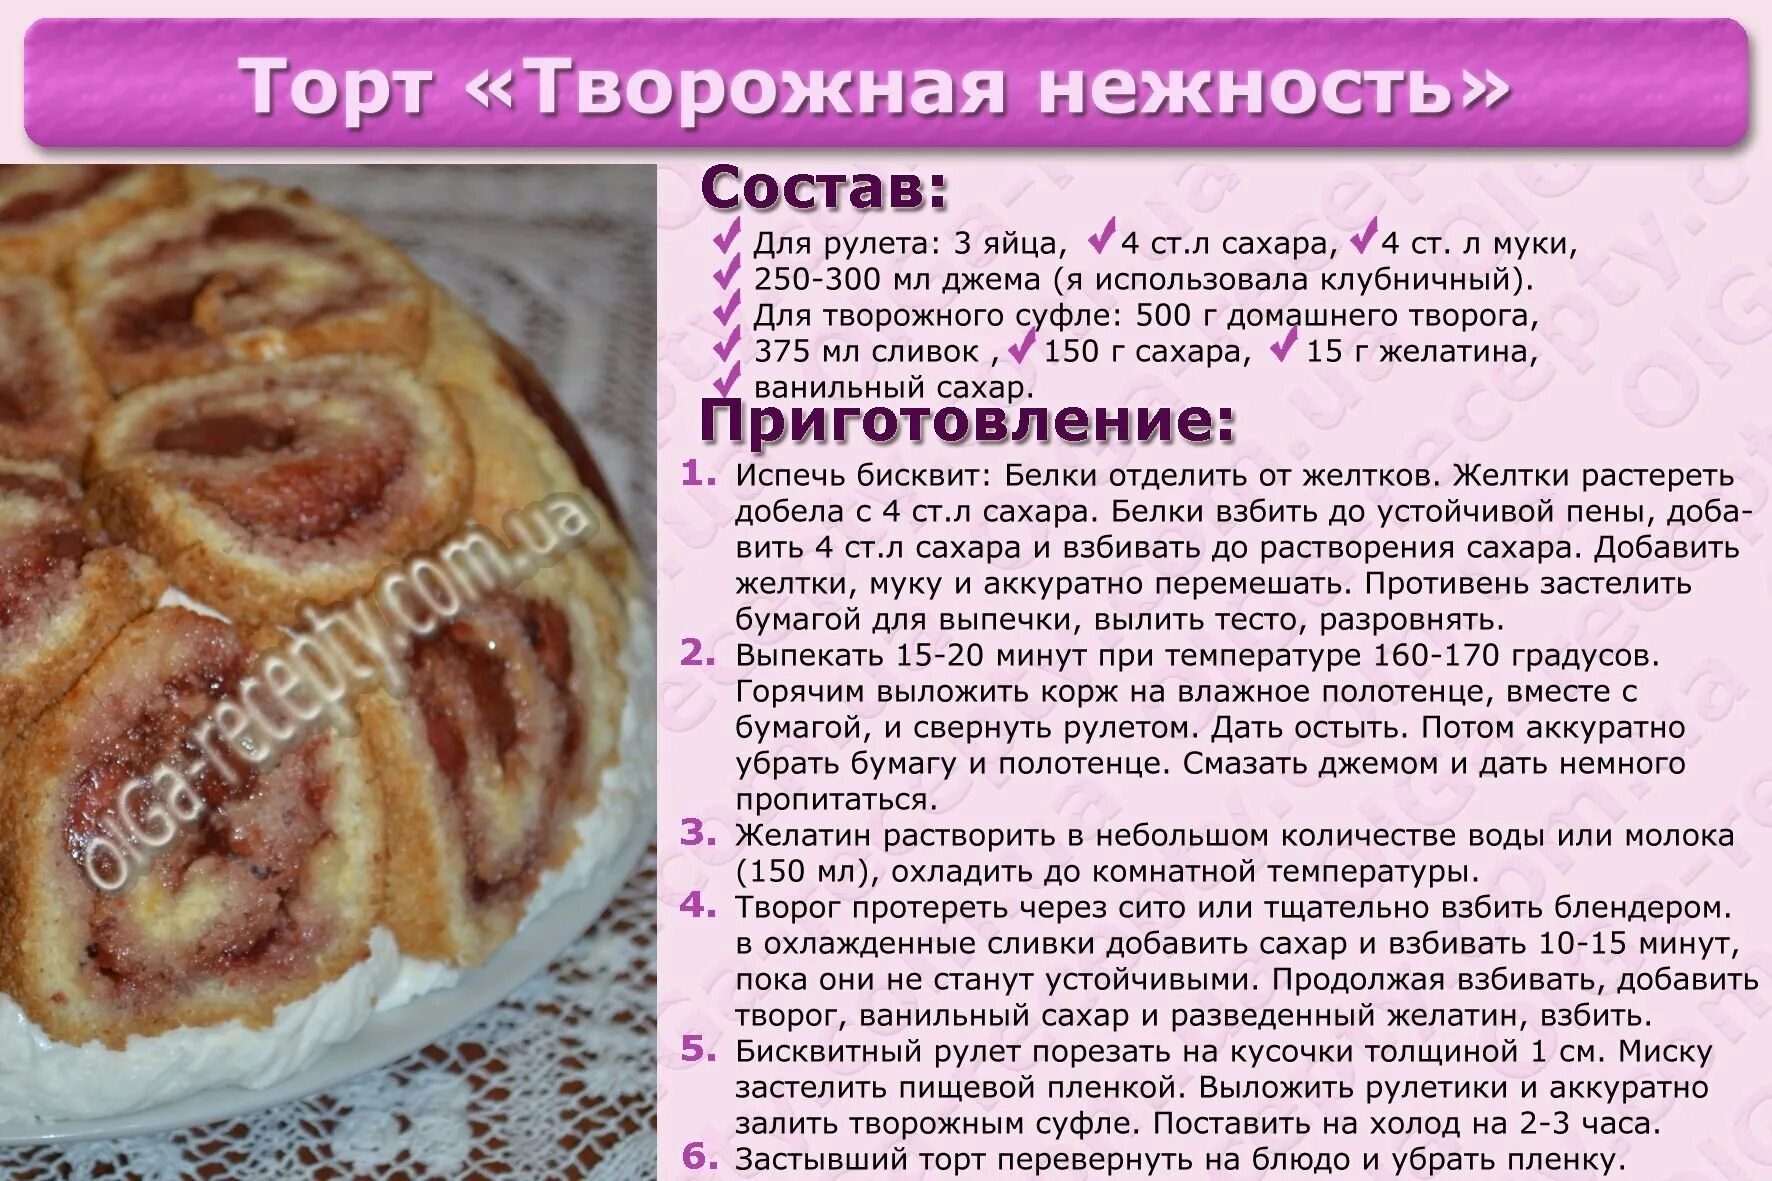 Рецепт теста для тортов в духовке. Рецепты в картинках с описанием выпечка. Рецепты с описанием. Рецепт торта картинки с описанием. Рецепт пирога в картинках.